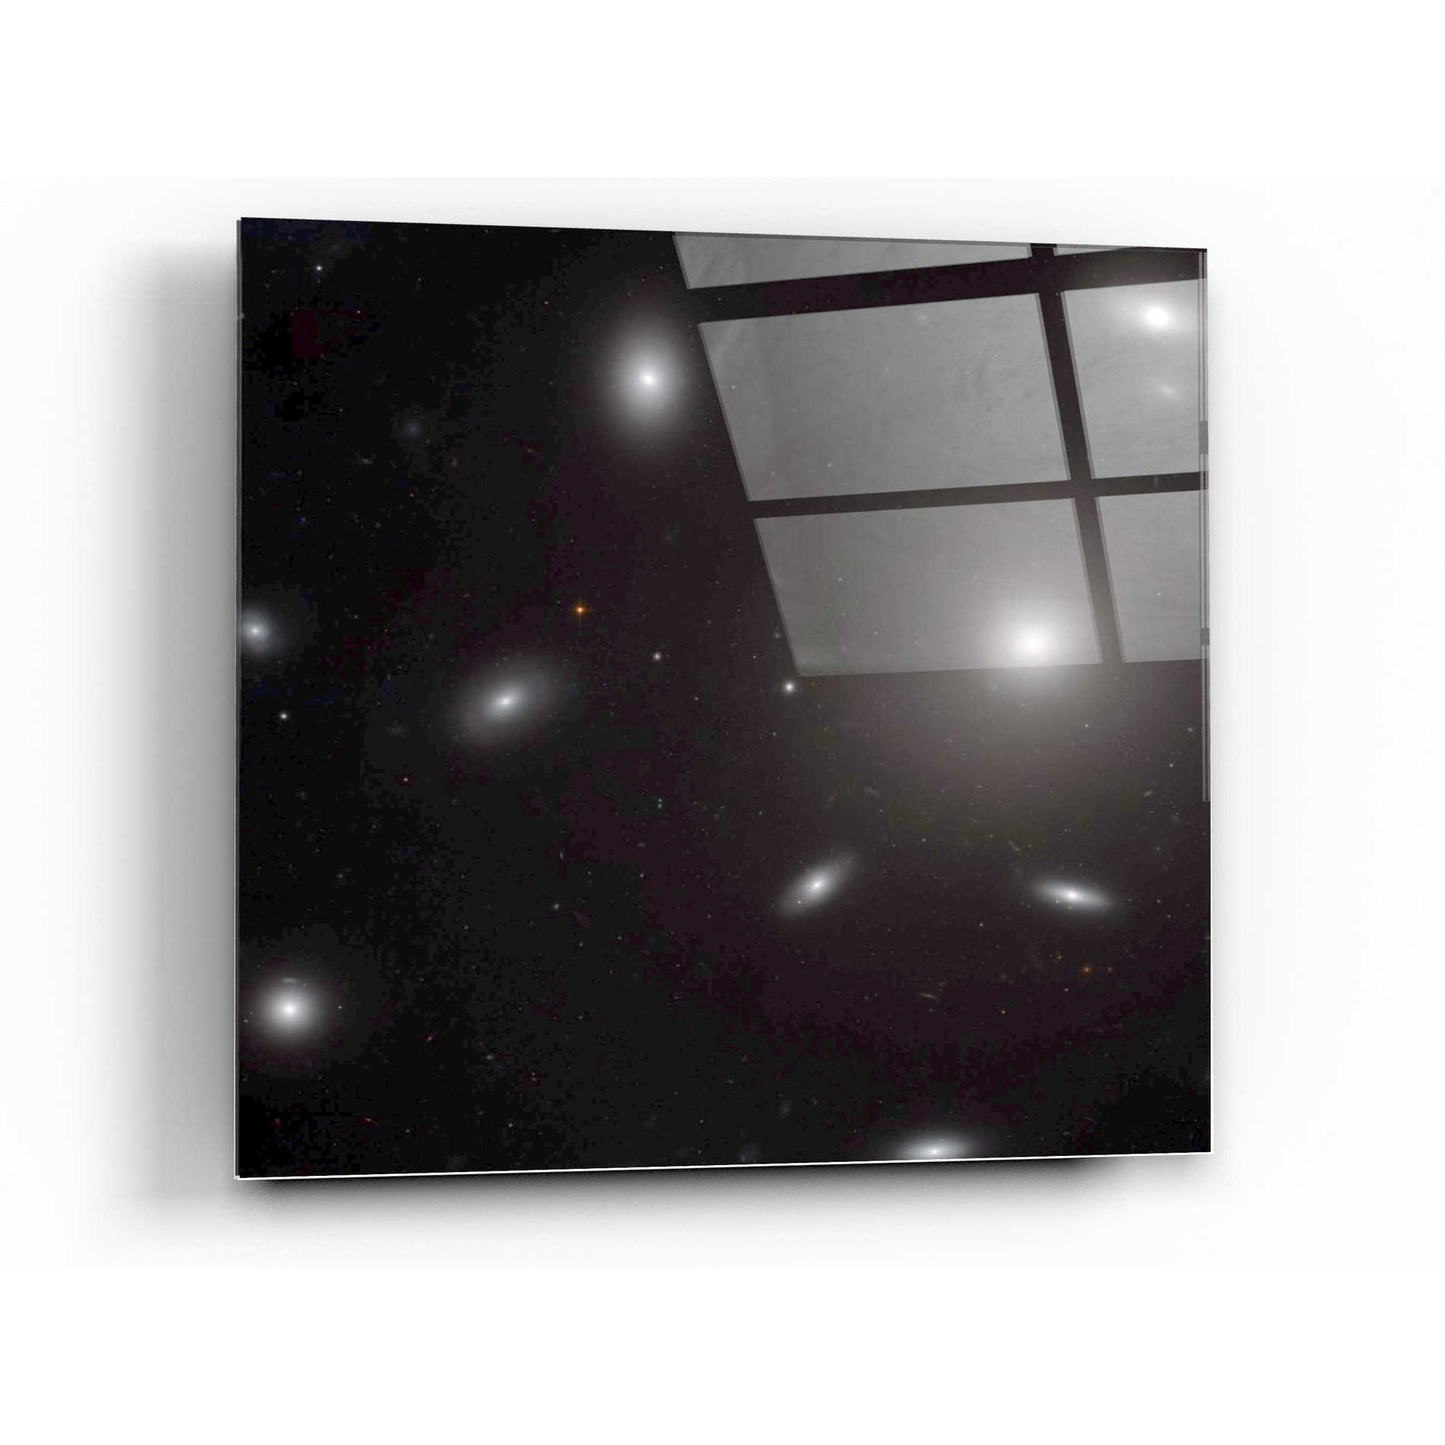 Epic Art "NGC 4874" Hubble Space Telescope Acrylic Glass Wall Art,24x24